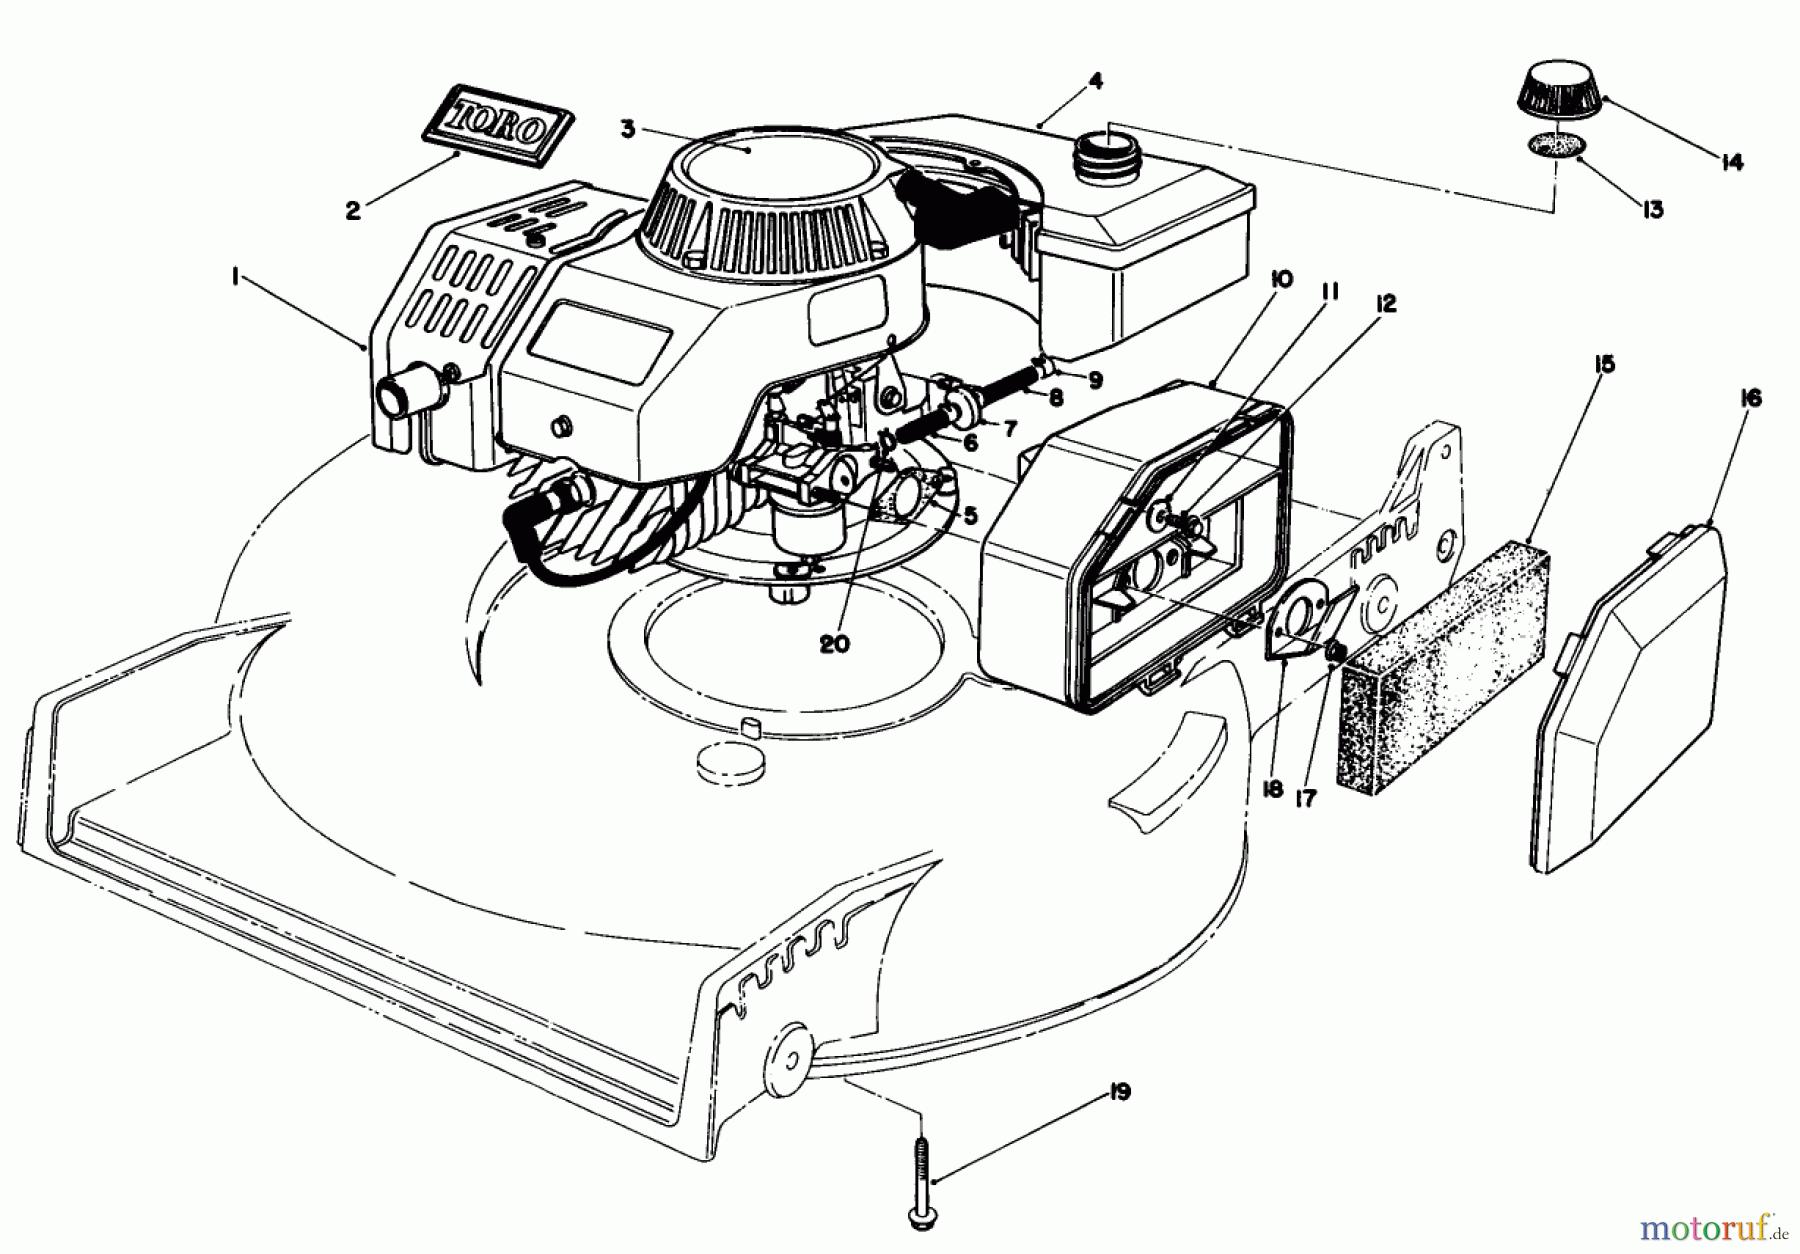  Toro Neu Mowers, Walk-Behind Seite 1 20584 - Toro Lawnmower, 1986 (6000001-6999999) ENGINE ASSEMBLY